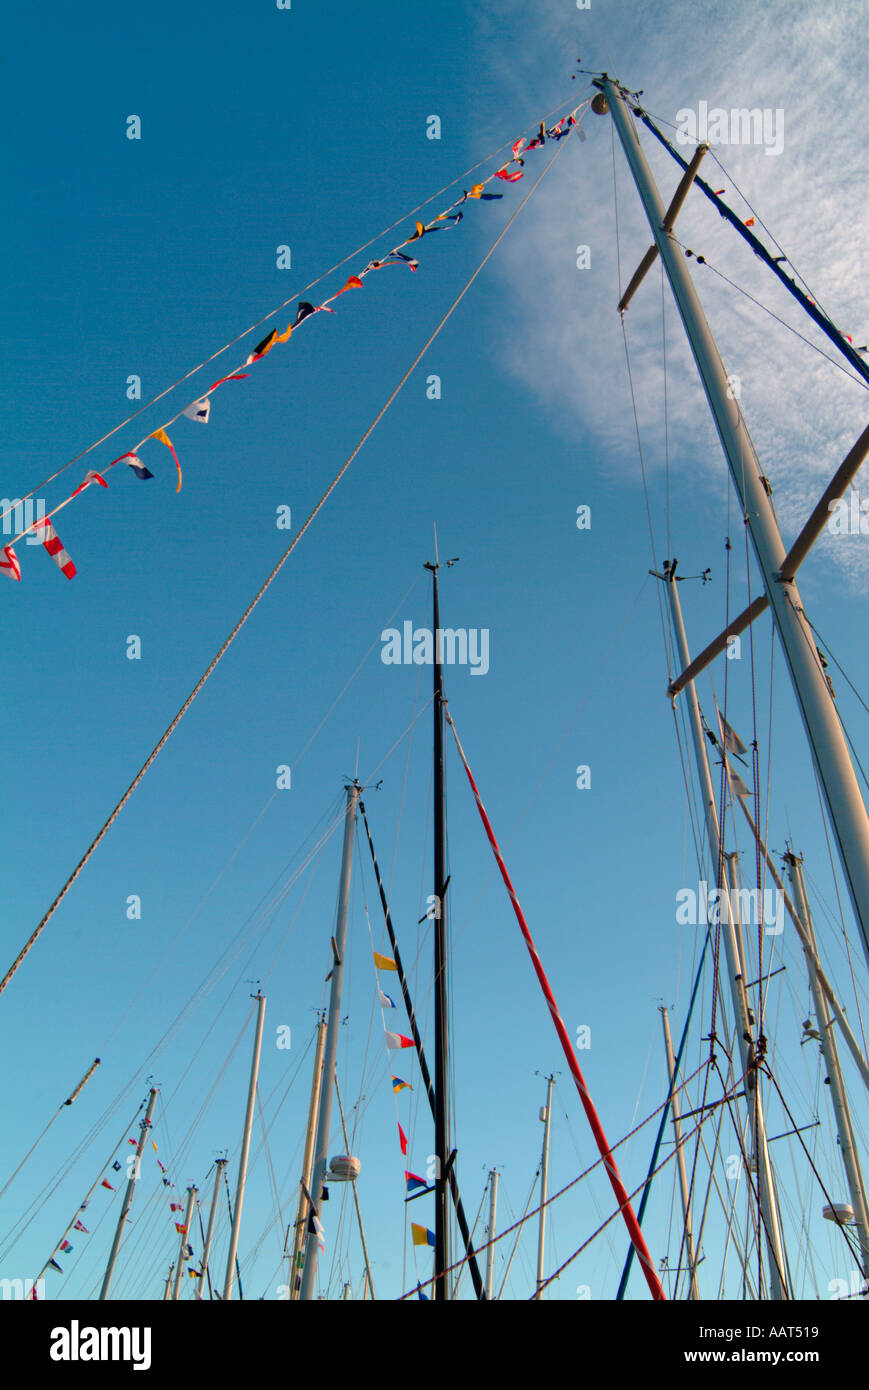 Masts of sailboats in a marina Stock Photo